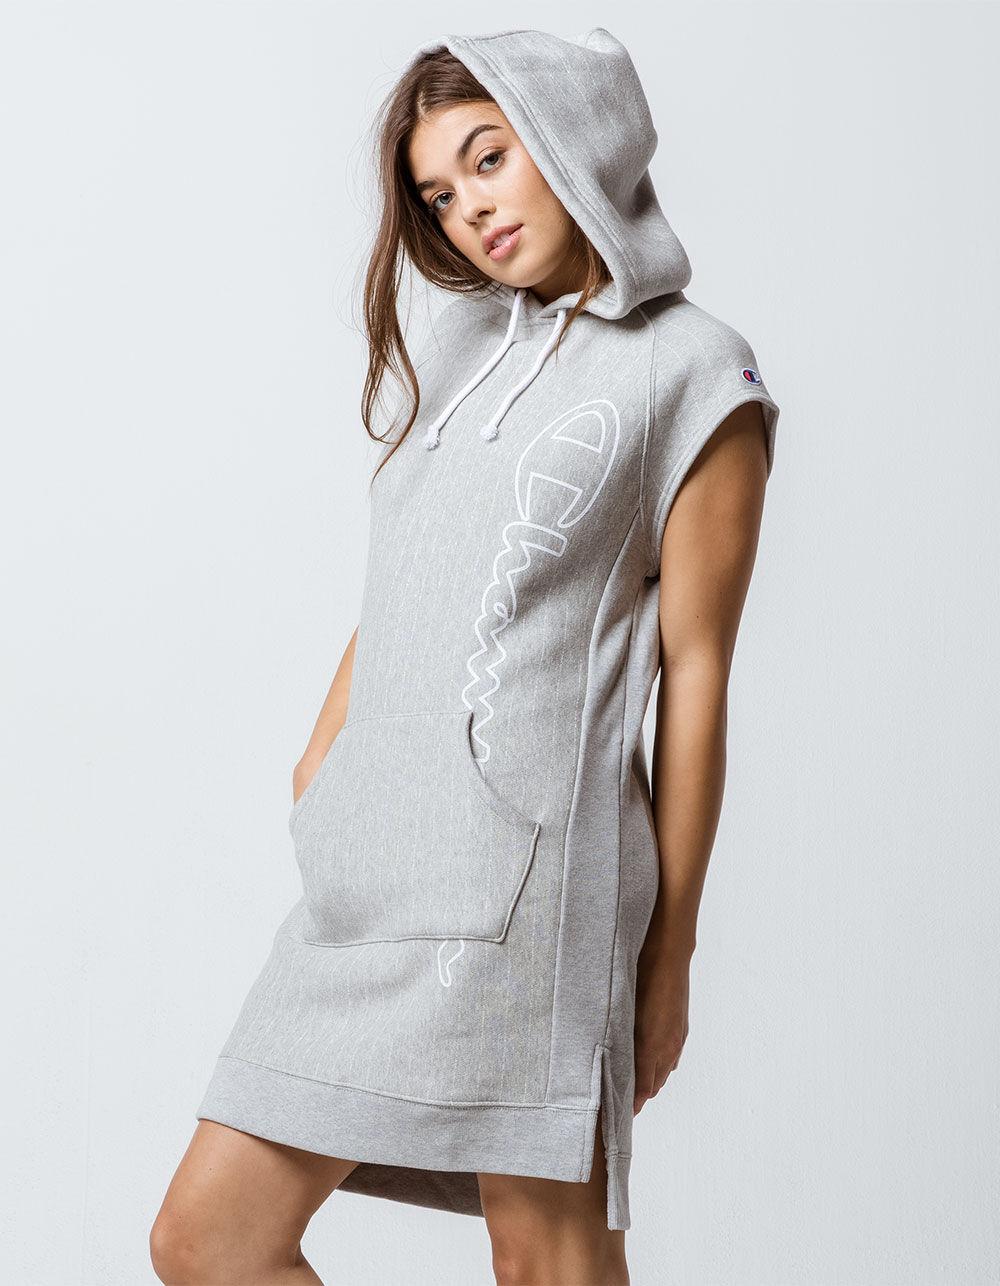 Hooded Sweatshirt Dress in Gray 